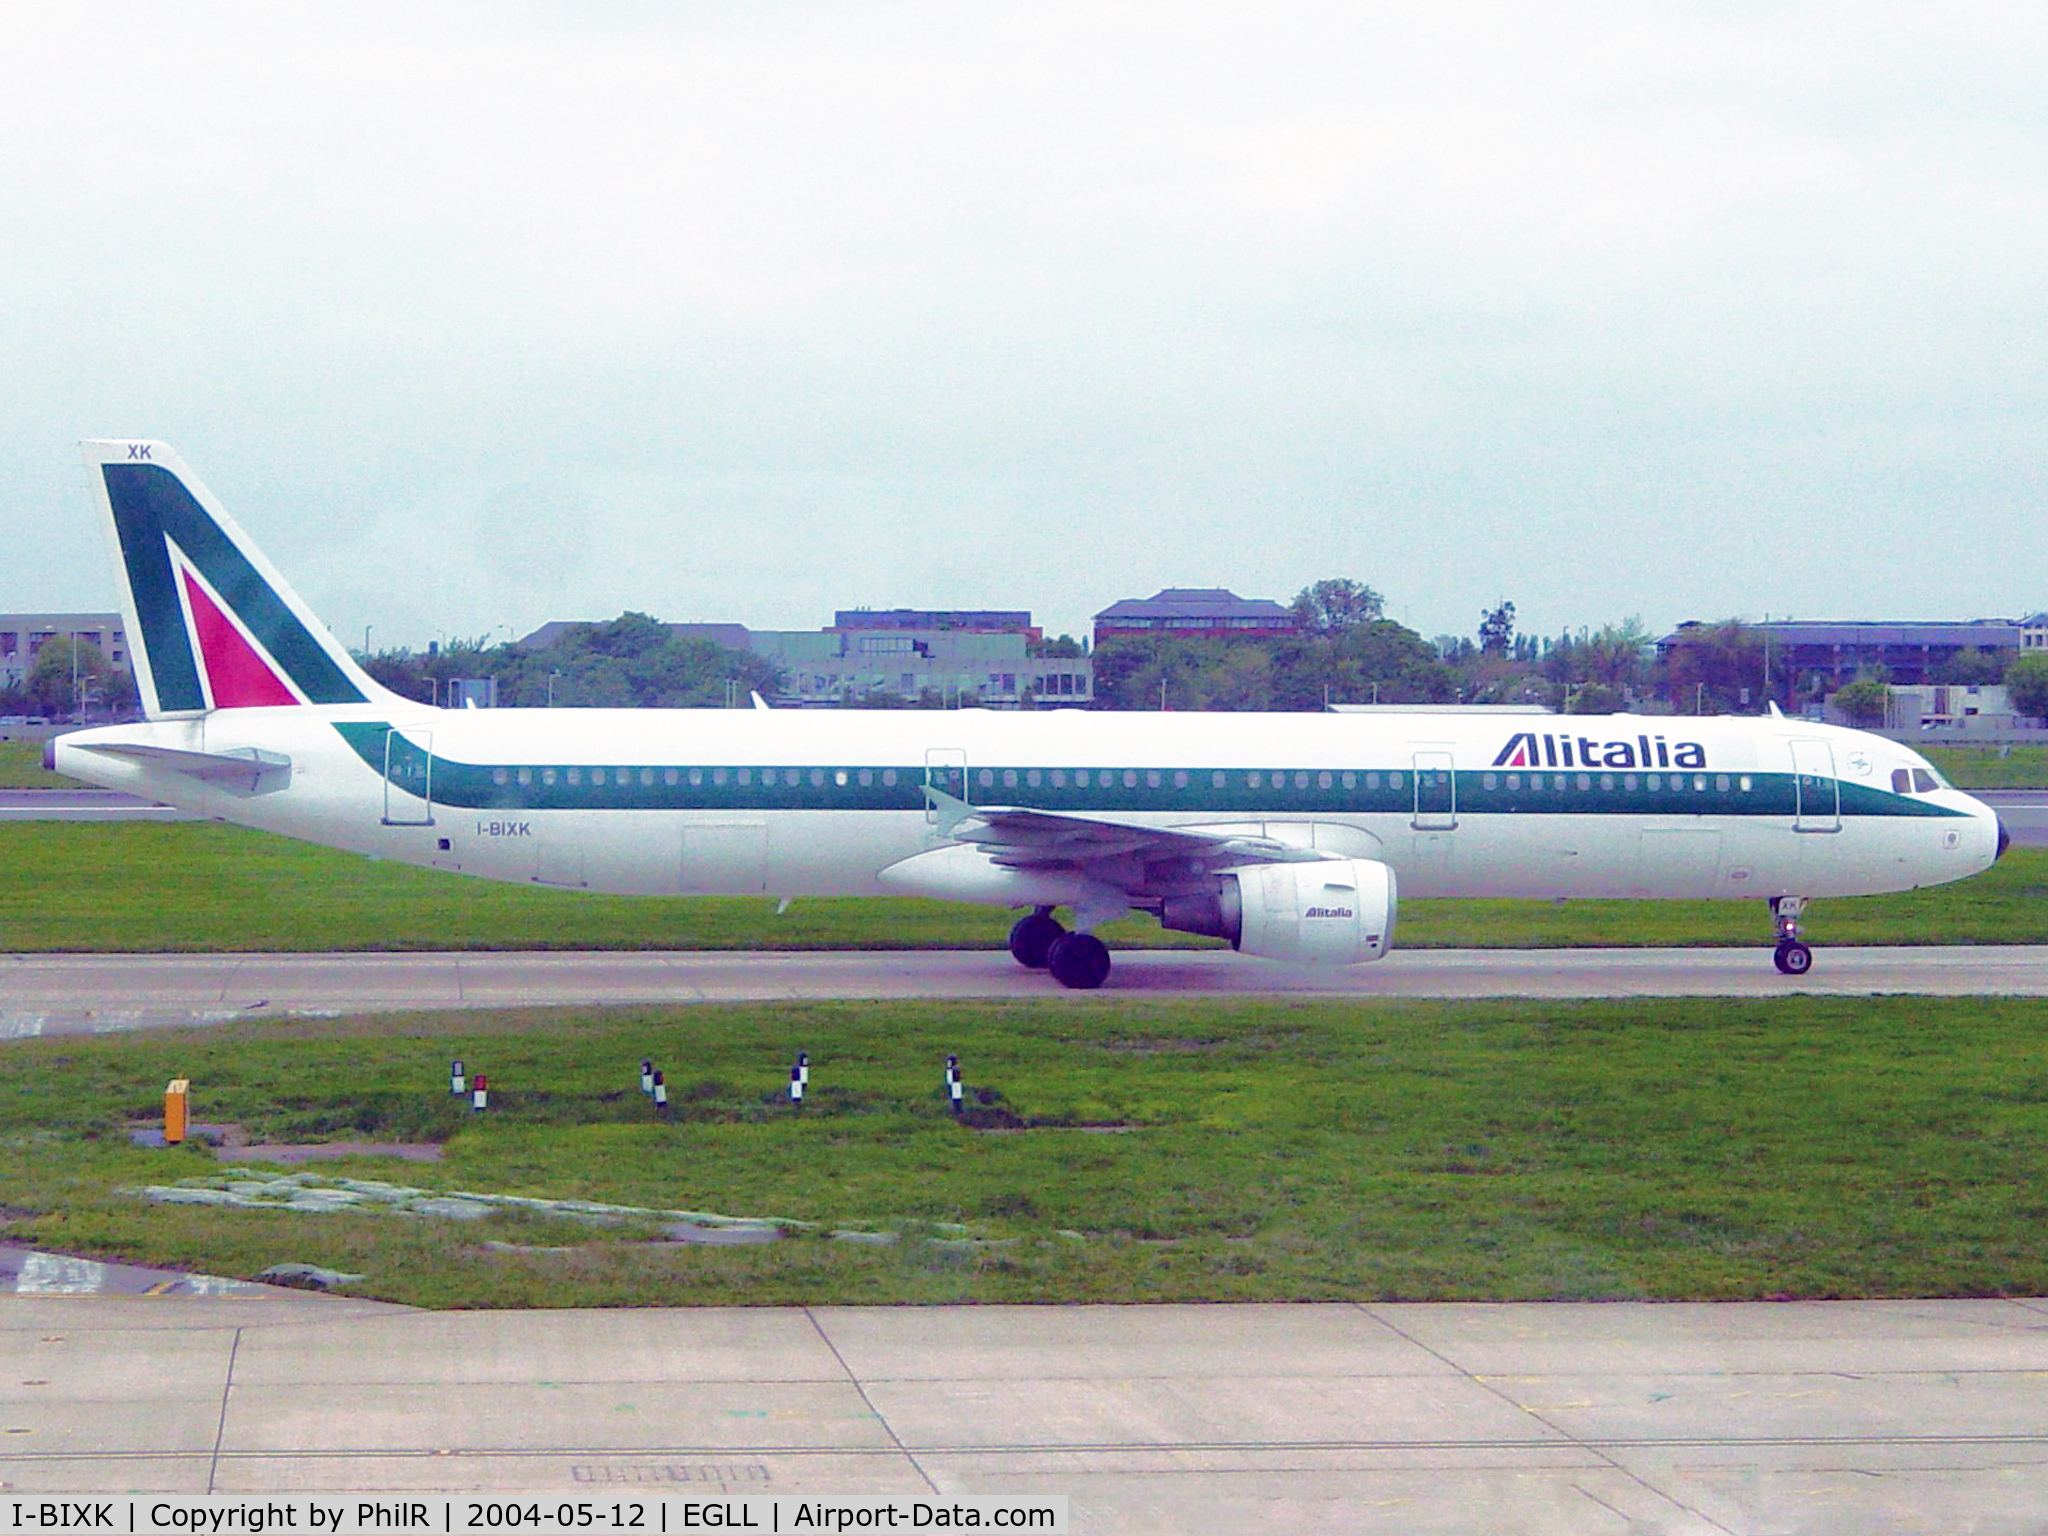 I-BIXK, 2000 Airbus A321-112 C/N 1220, I-BIXK 2000 A321-100 Alitalia LHR